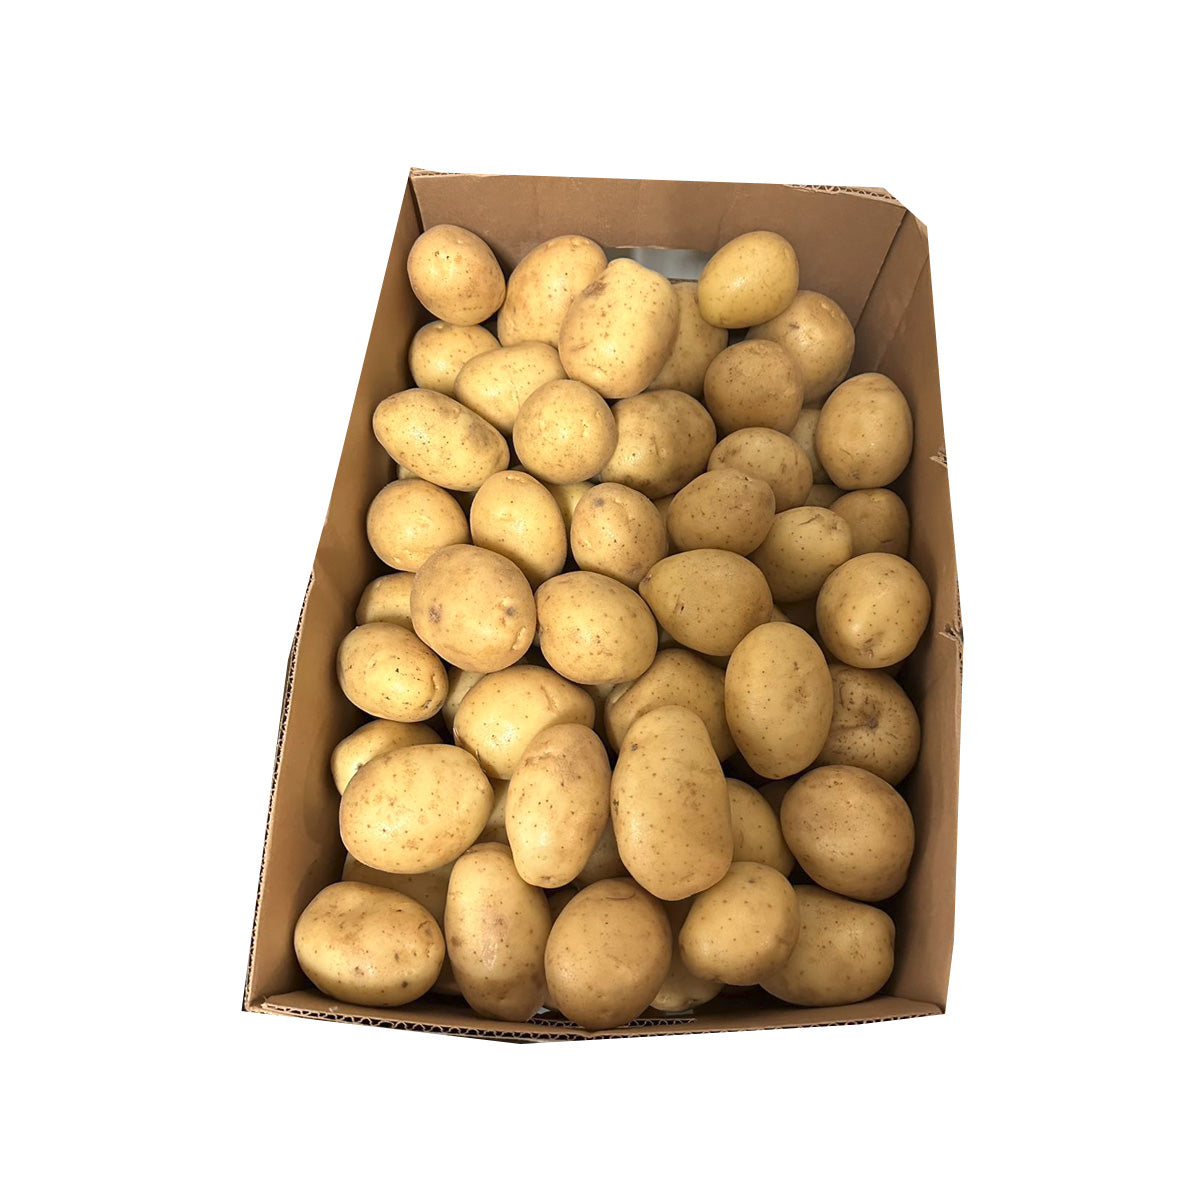 Yukon Potatoes 50lb